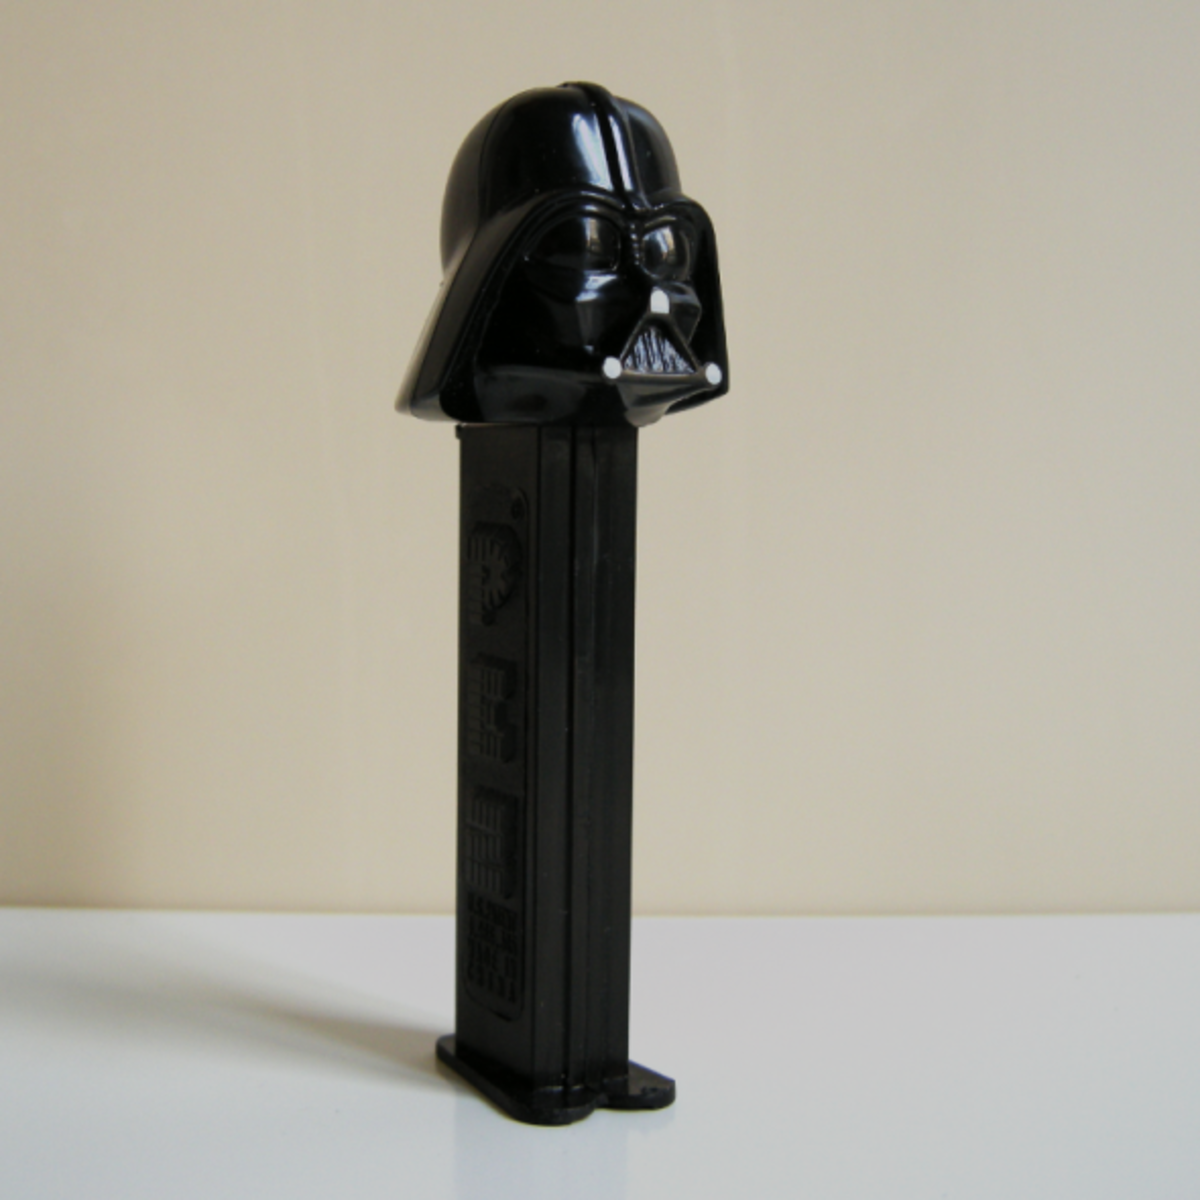 Darth Vader Pez by Deborah Swain